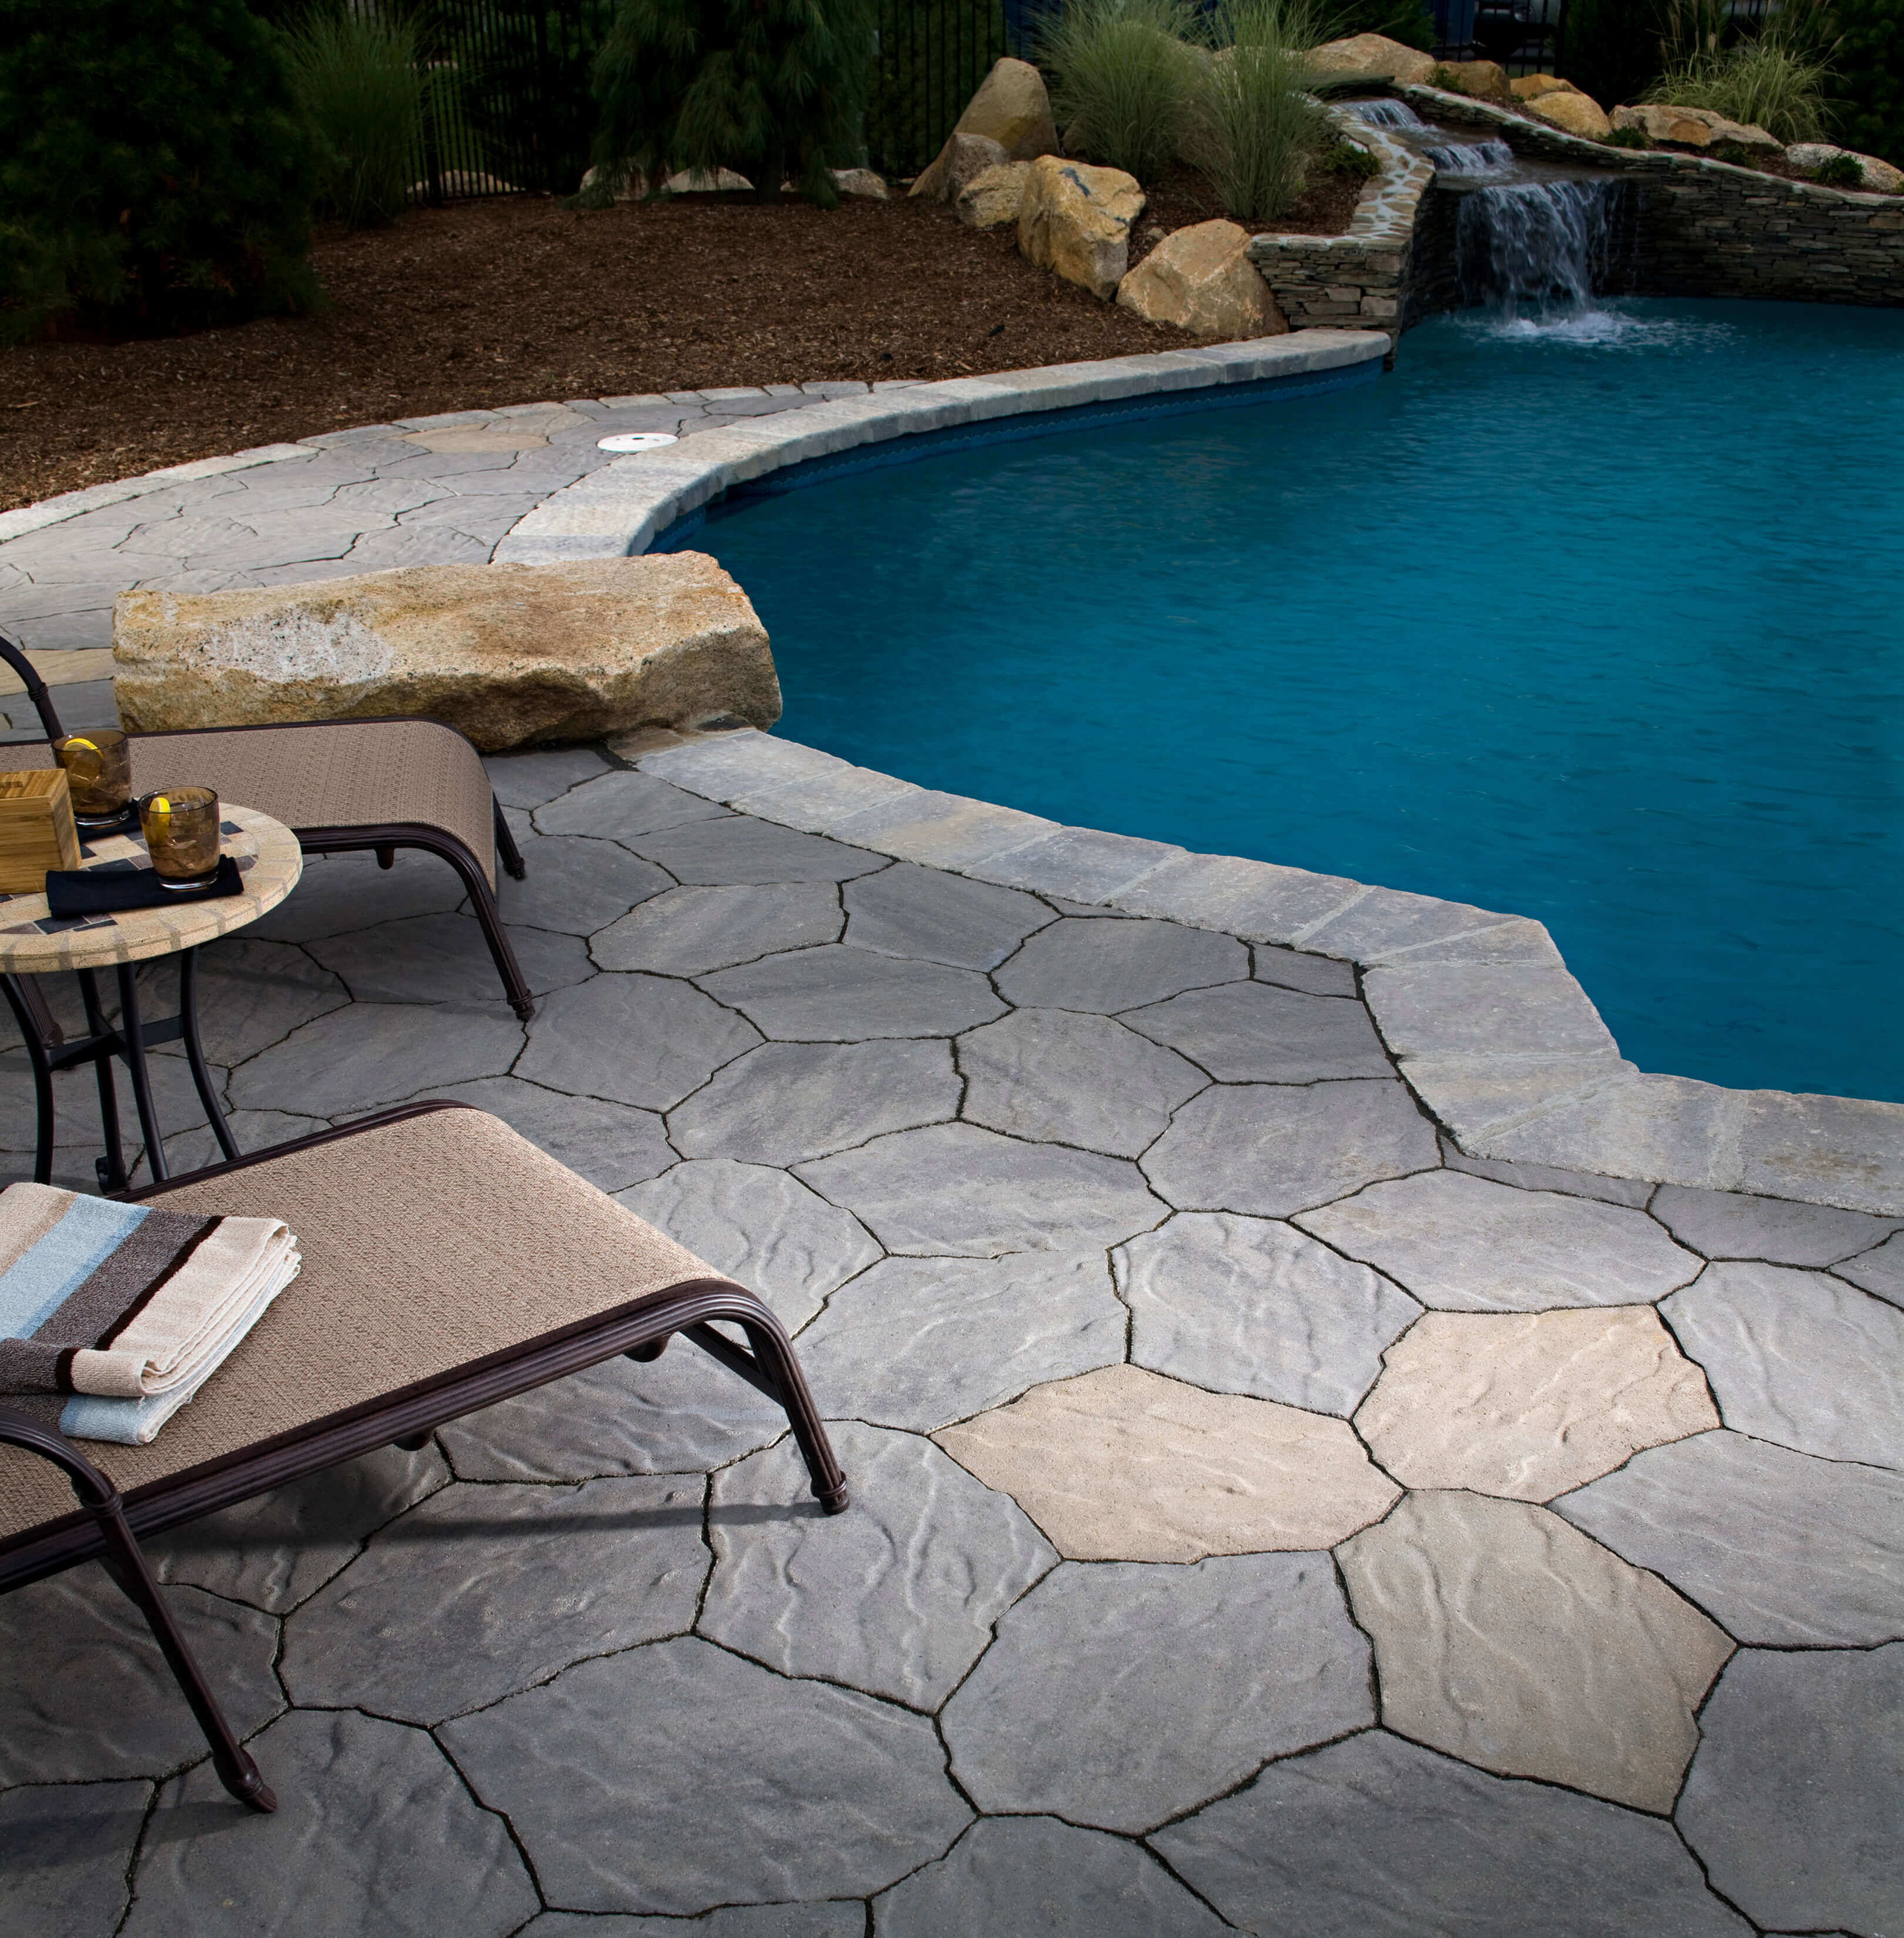 Pool deck pavers stone hardscape design idea